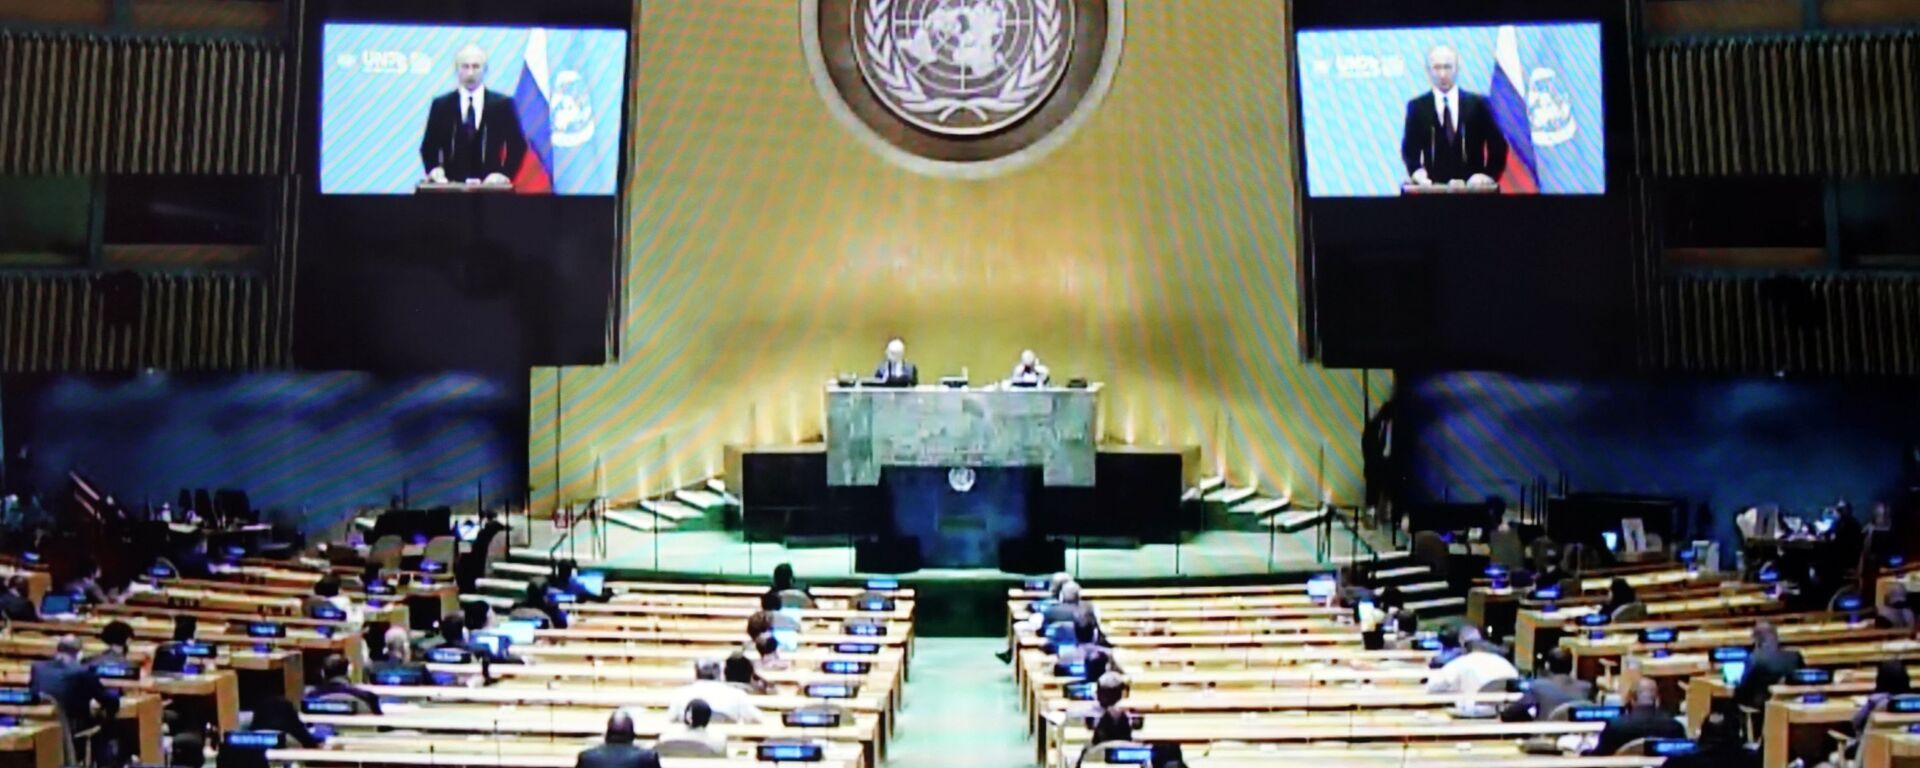 اجتماع الدورة الـ 75 للجمعية العامة، الأمم المتحدة 22 سبتمبر 2020 - سبوتنيك عربي, 1920, 25.05.2021